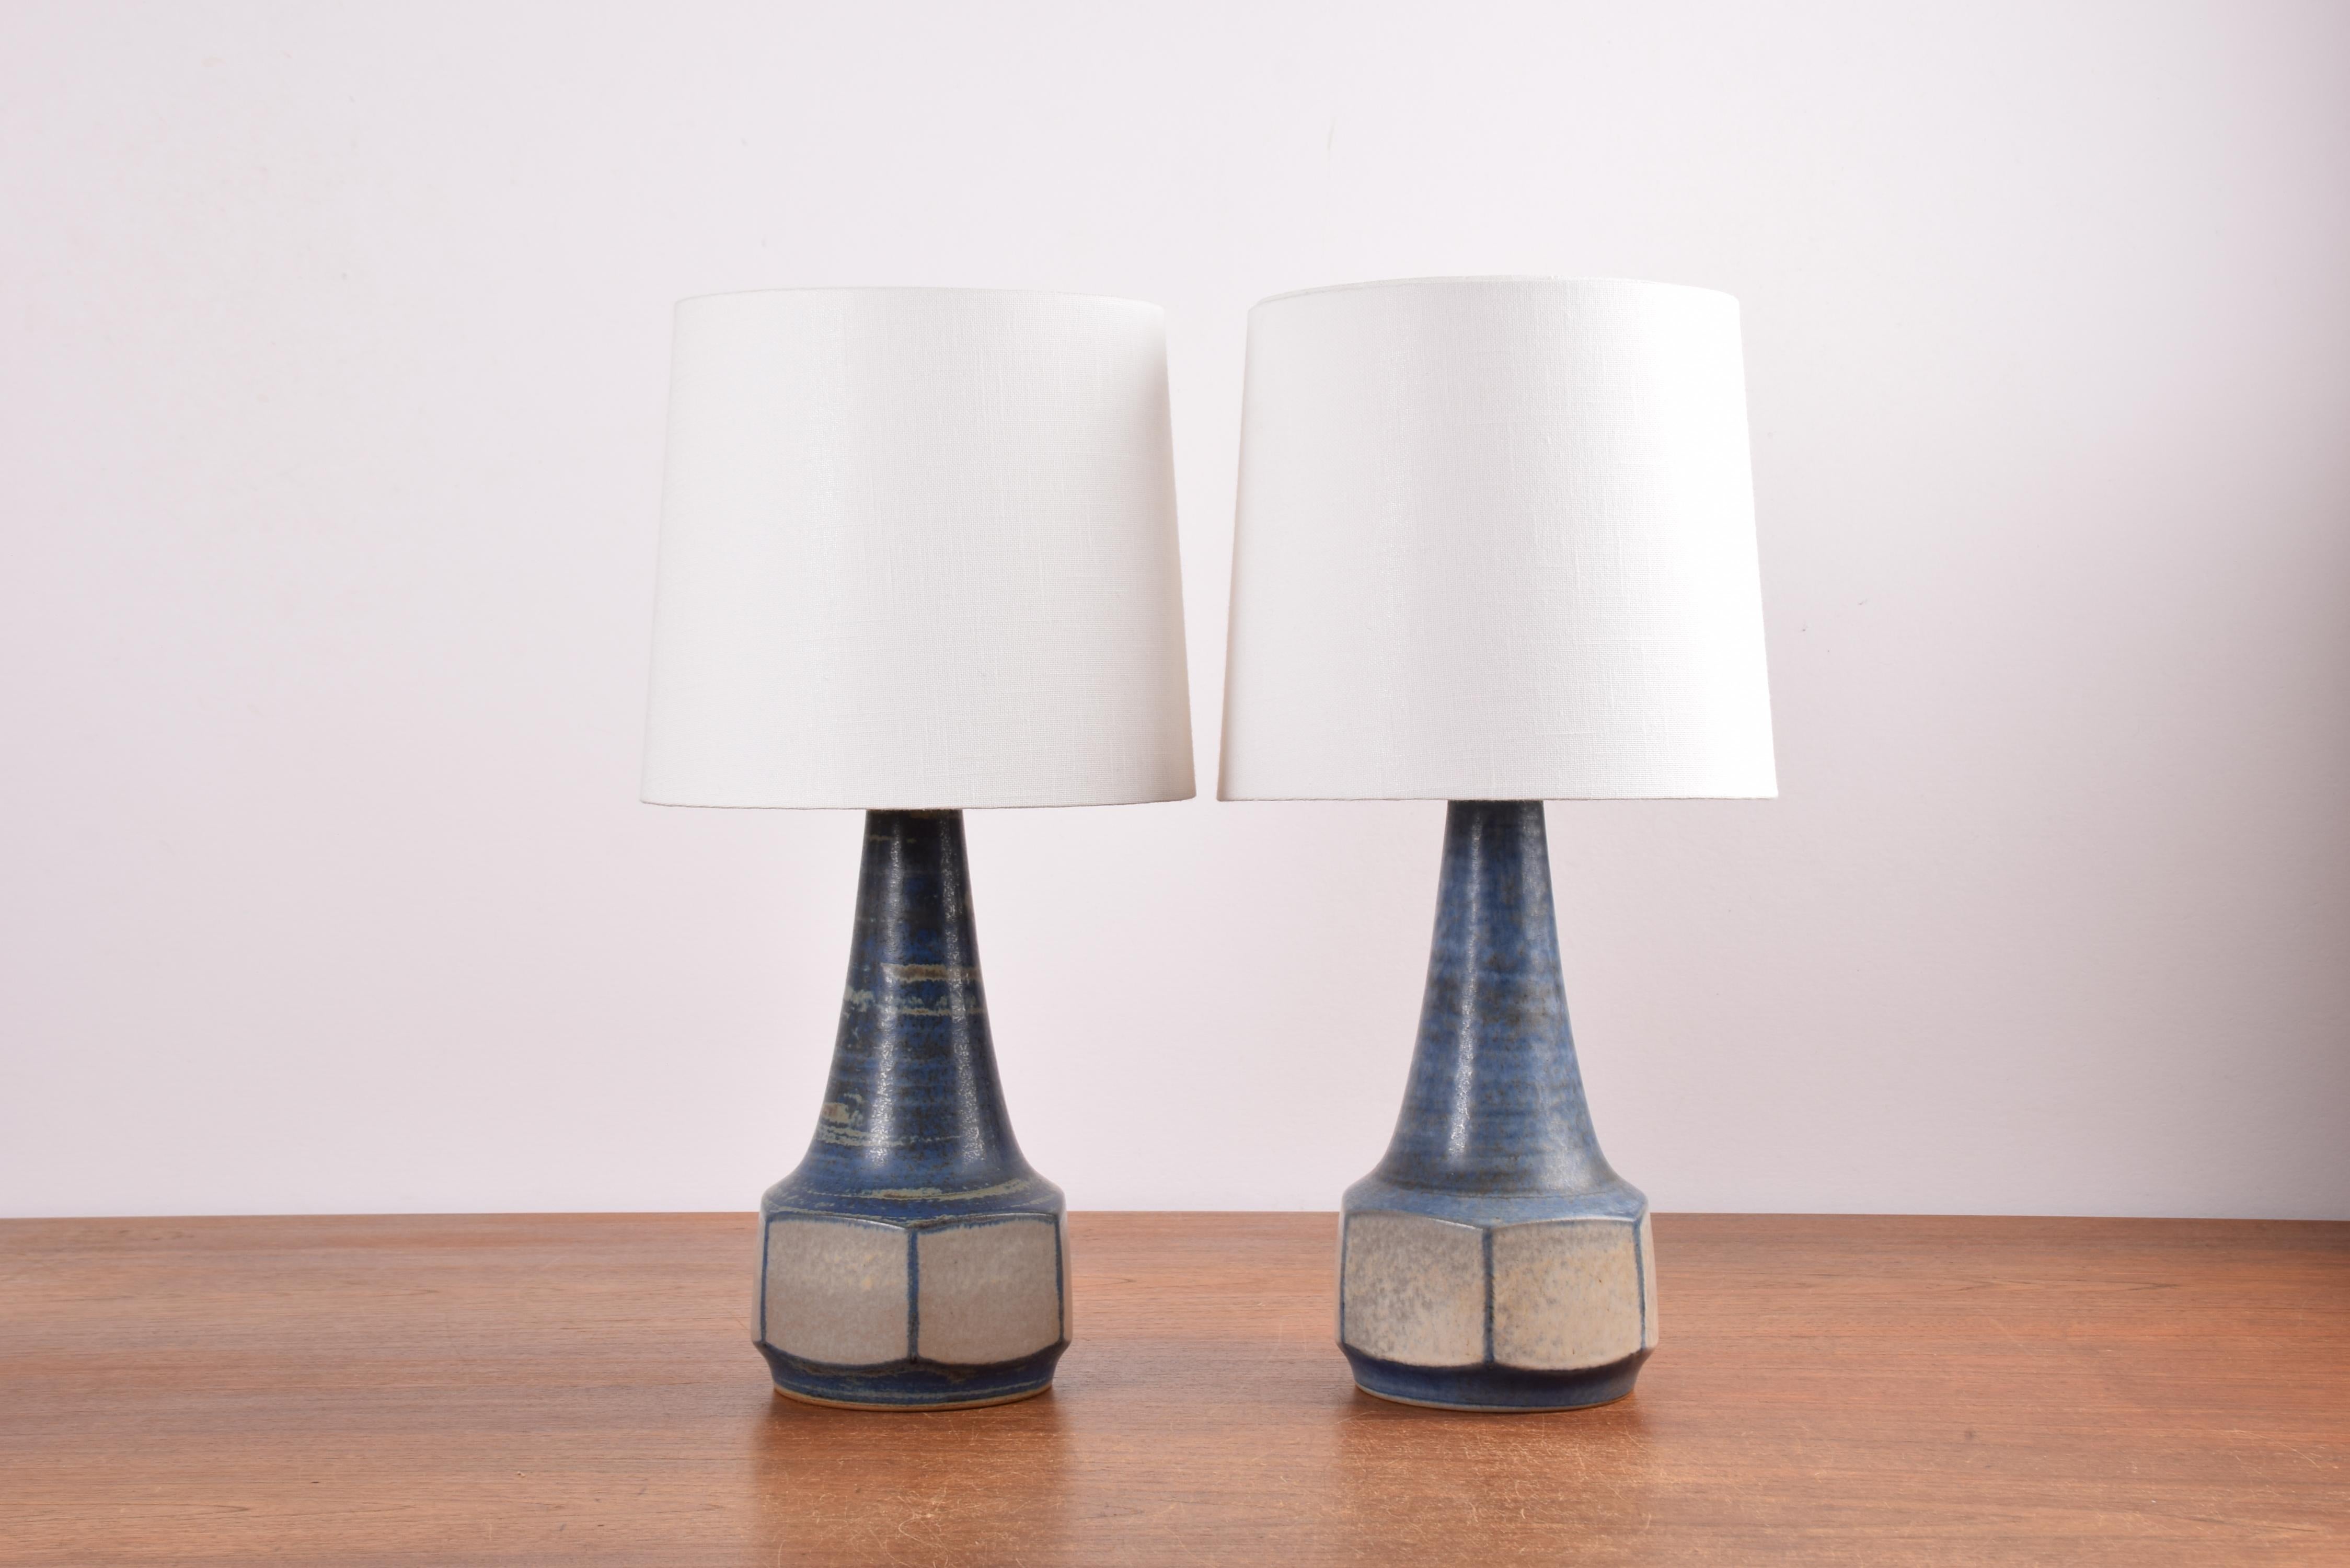 Ein Paar Tischlampen, entworfen von Marianne Starck für Michael Andersen. Hergestellt in den 1960er oder 1970er Jahren.
Die Lampen sind aus Steingut gefertigt und haben eine matte blaue und graue Glasur mit einigen beigen Elementen.
Durch den